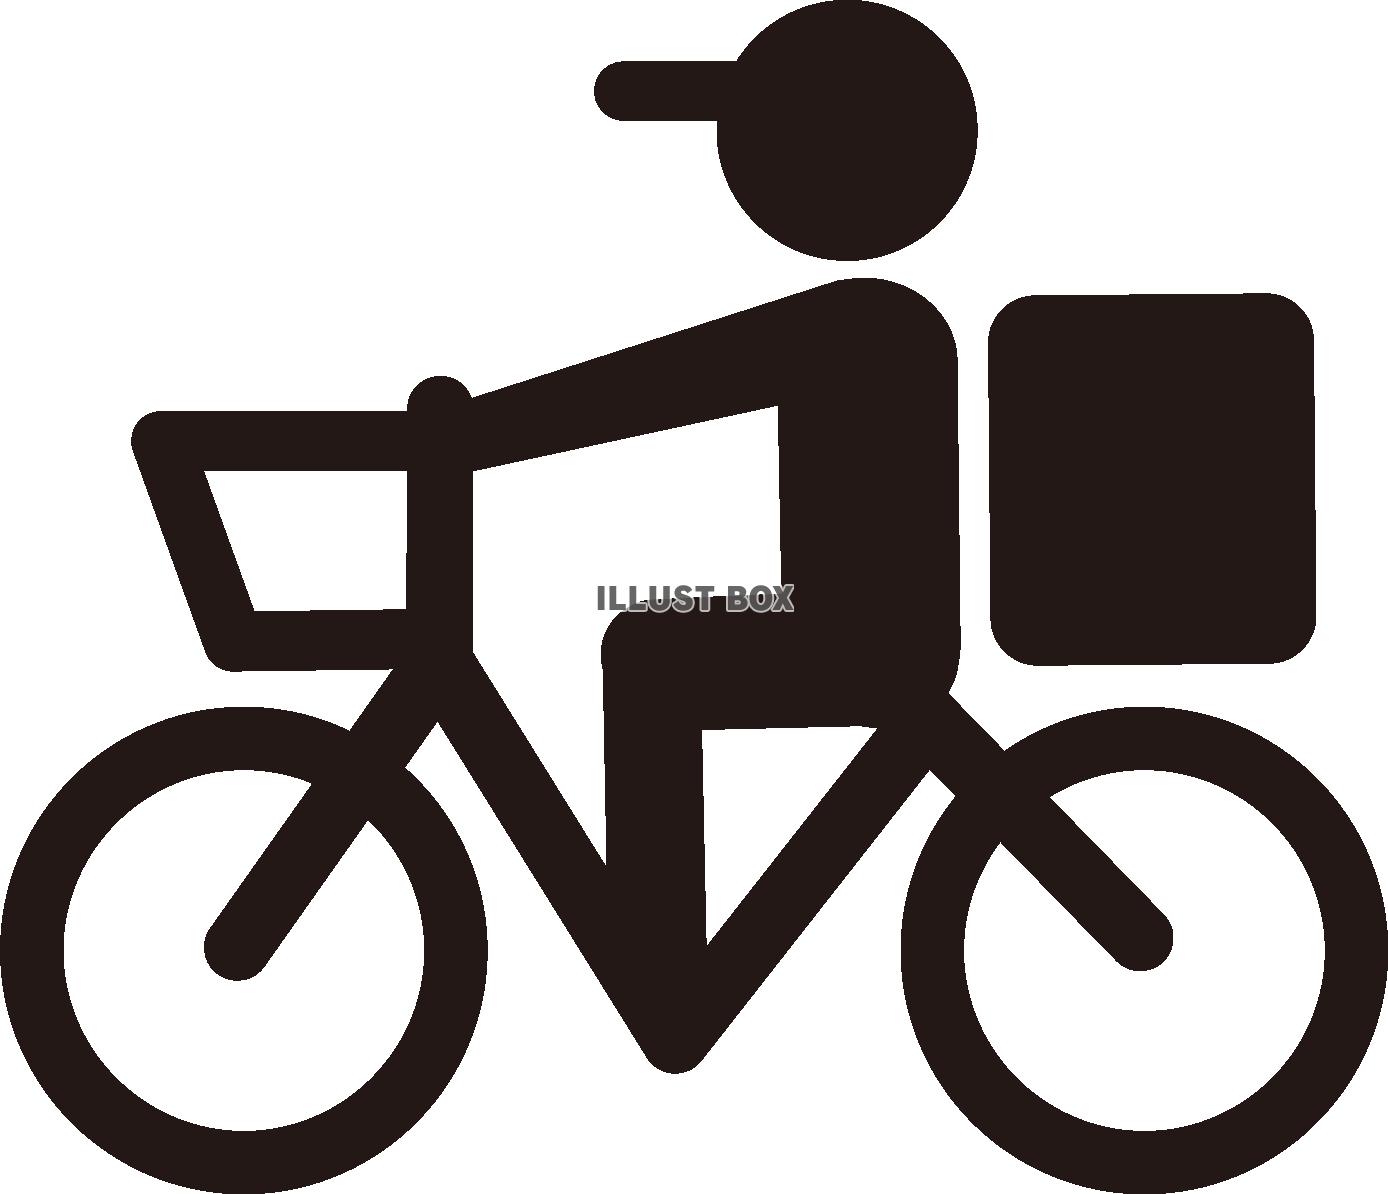 シルエット 素材 自転車 イラスト無料